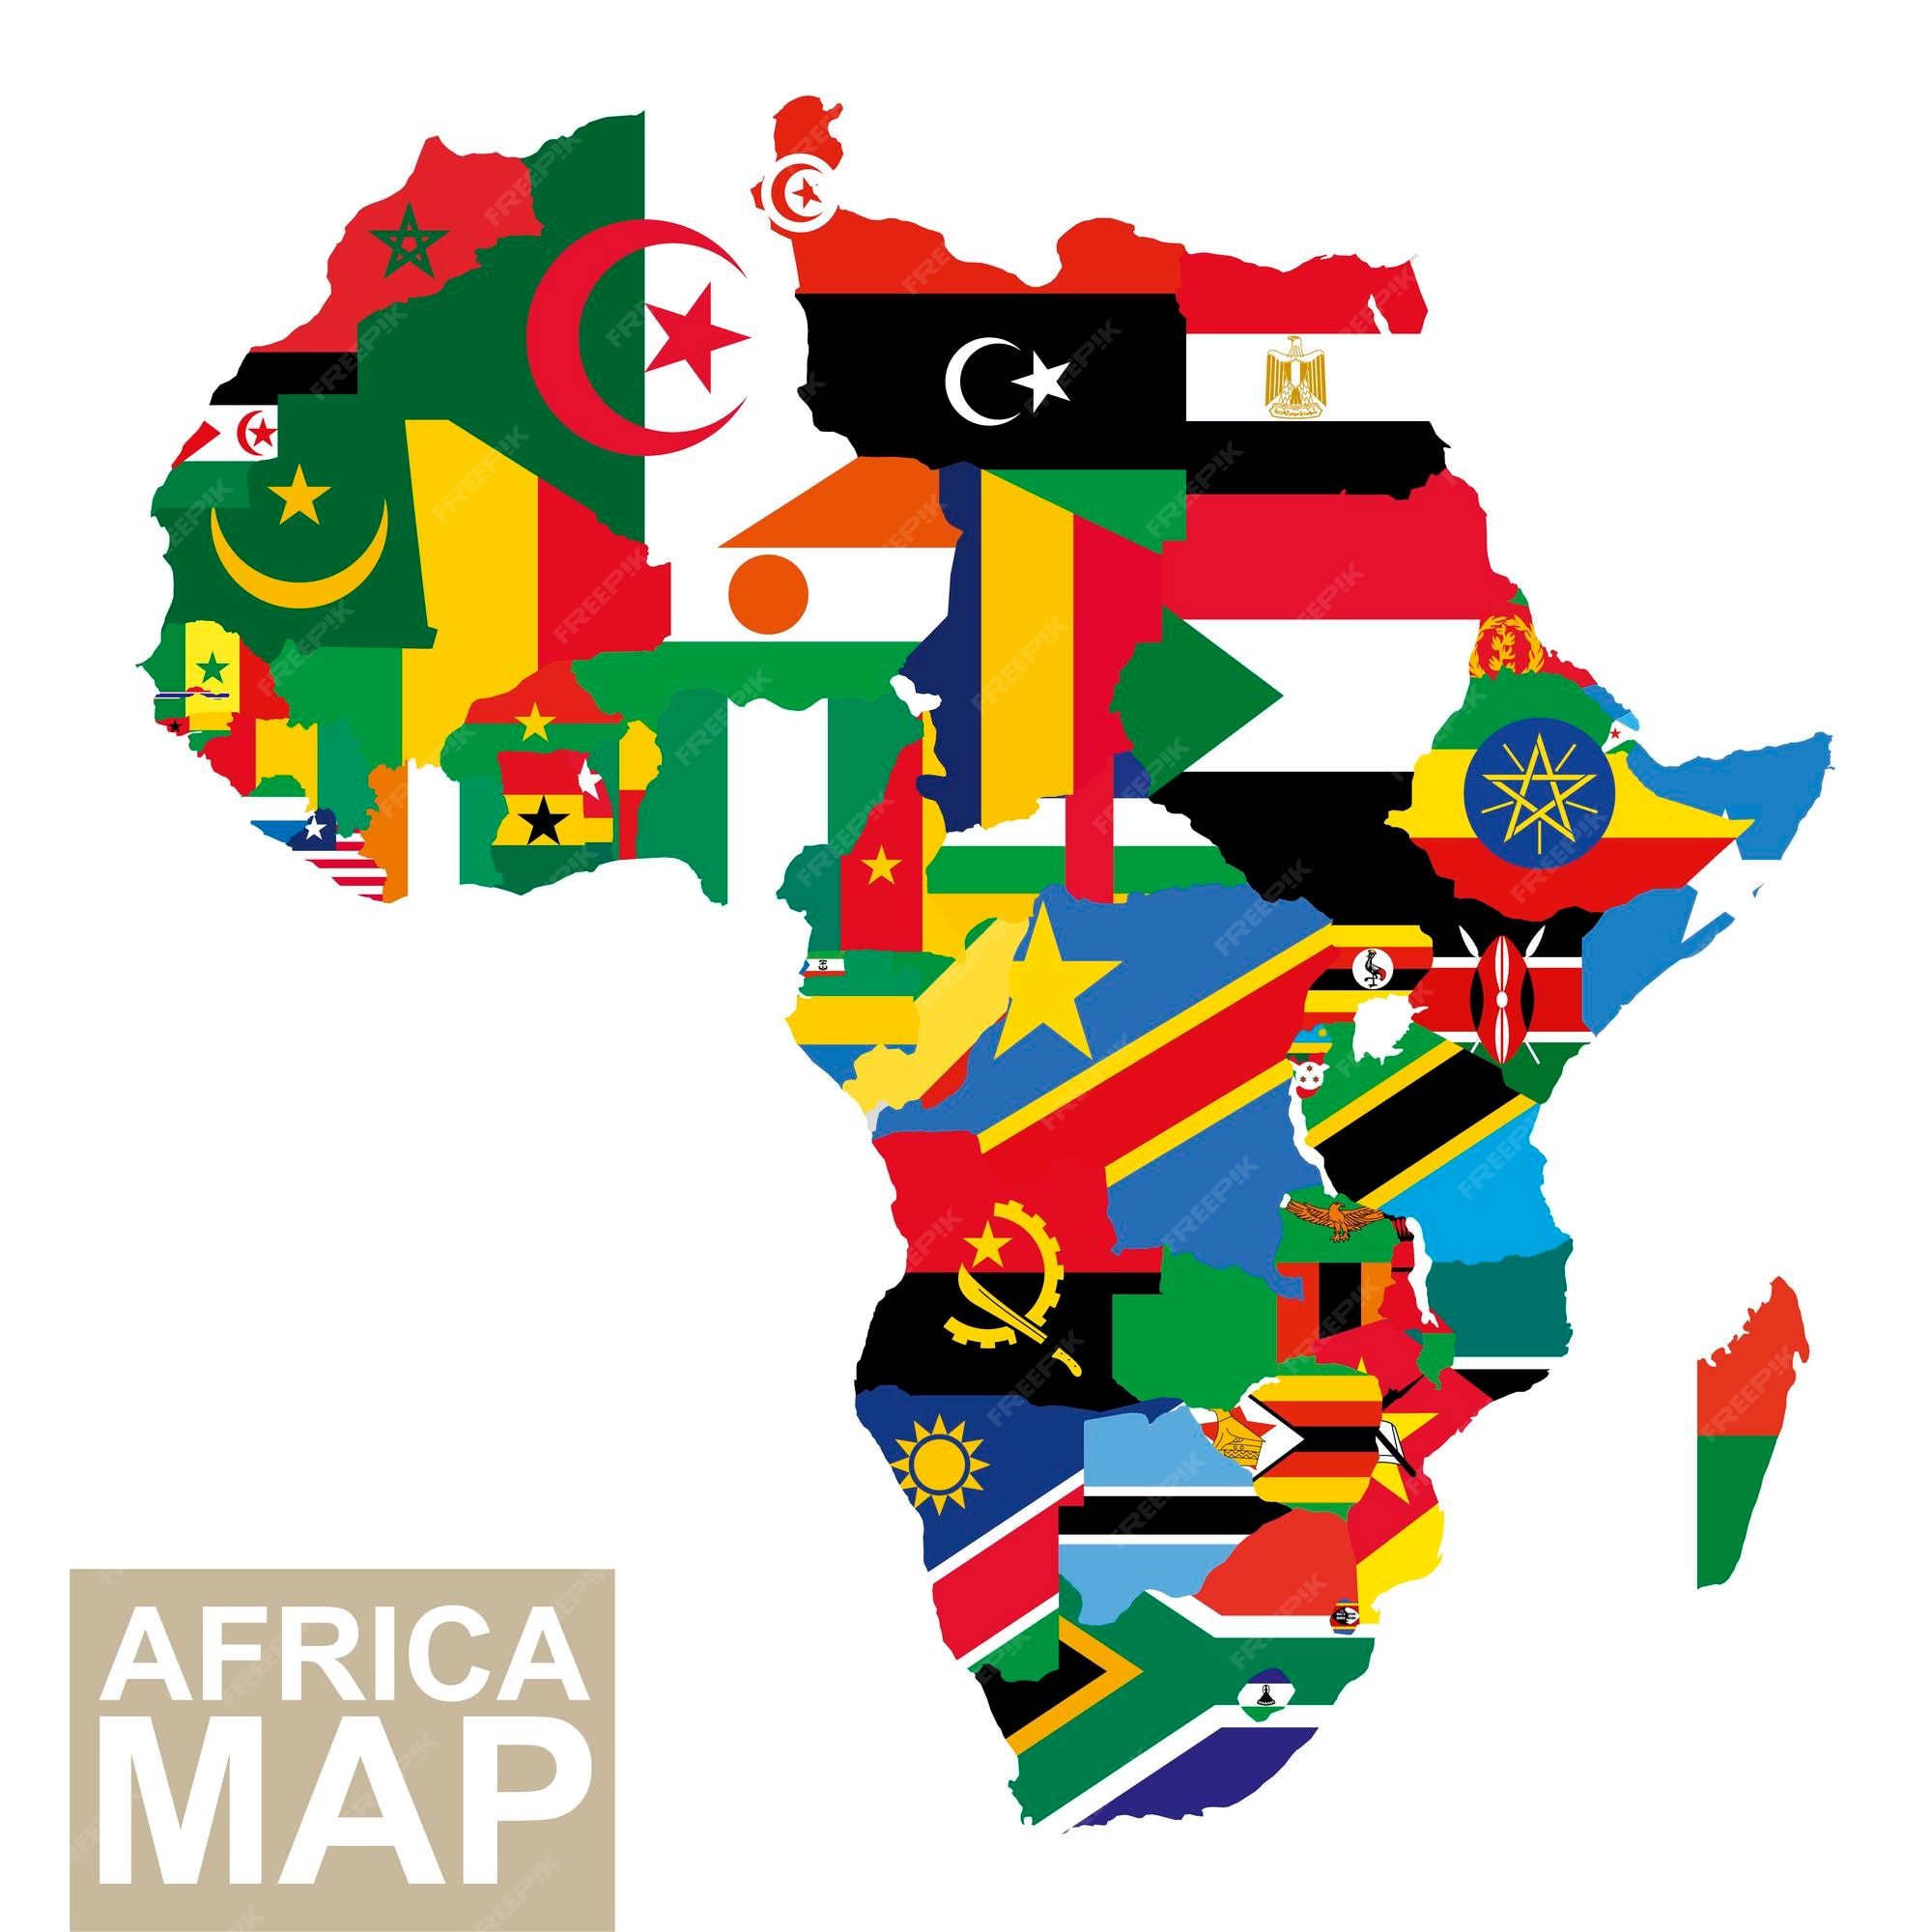 아프리카 지도 플래그와 함께 아프리카의 벡터 지도 아프리카 국가 플래그 벡터 일러스트 레이 션 프리미엄 벡터 0577